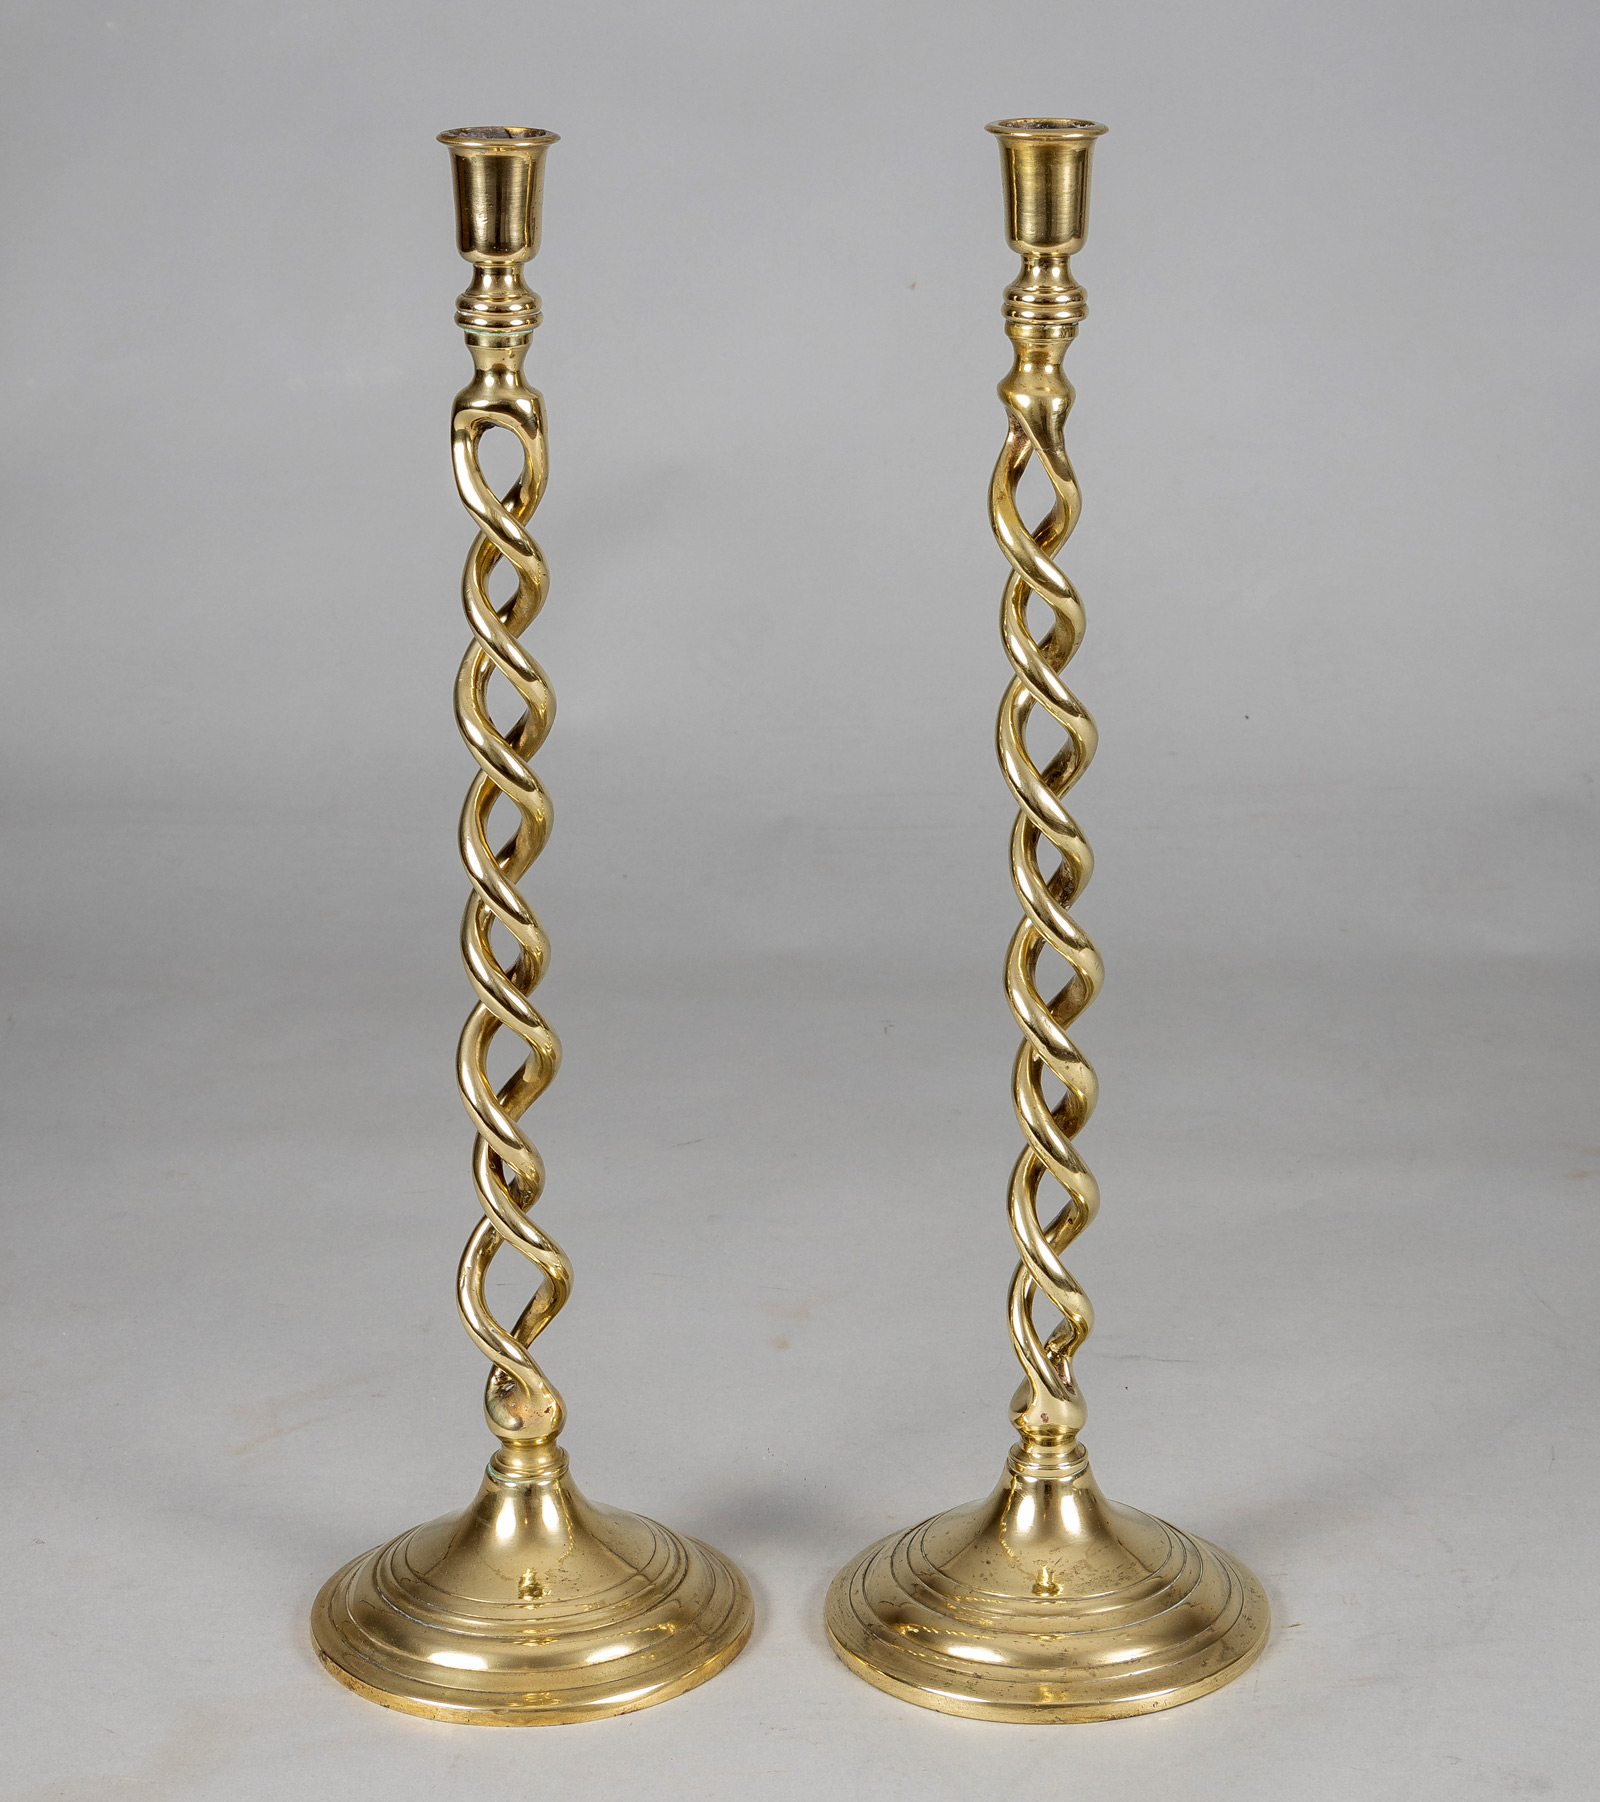 Pair of Brass Barley Twist Candlesticks by Peerage, Den